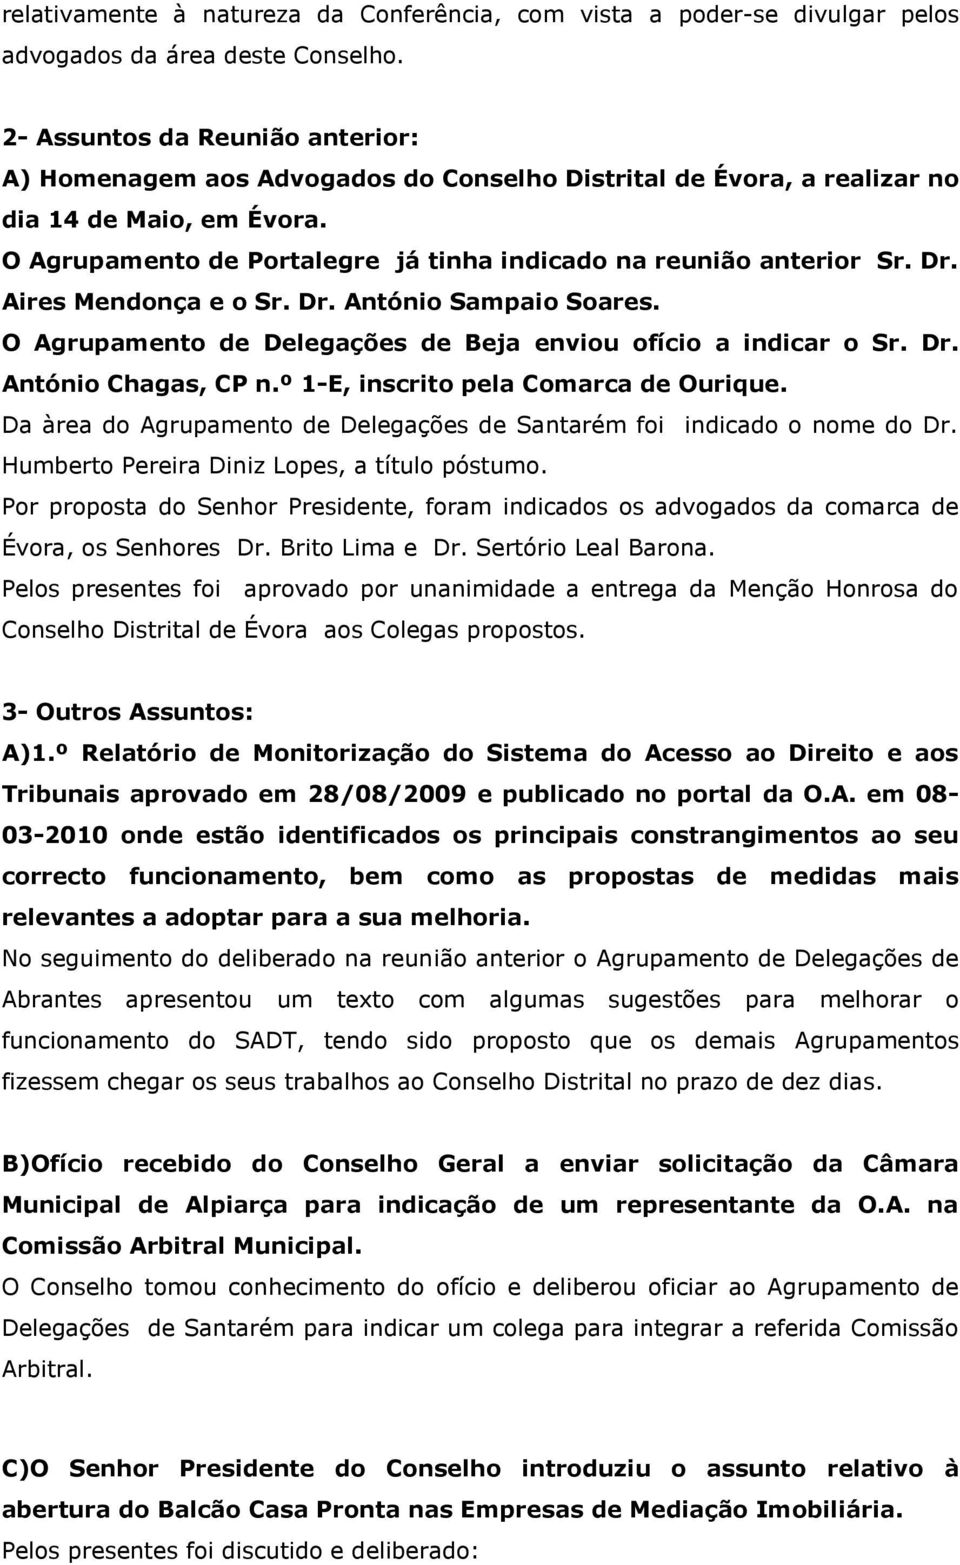 O Agrupamento de Portalegre já tinha indicado na reunião anterior Sr. Dr. Aires Mendonça e o Sr. Dr. António Sampaio Soares. O Agrupamento de Delegações de Beja enviou ofício a indicar o Sr. Dr. António Chagas, CP n.